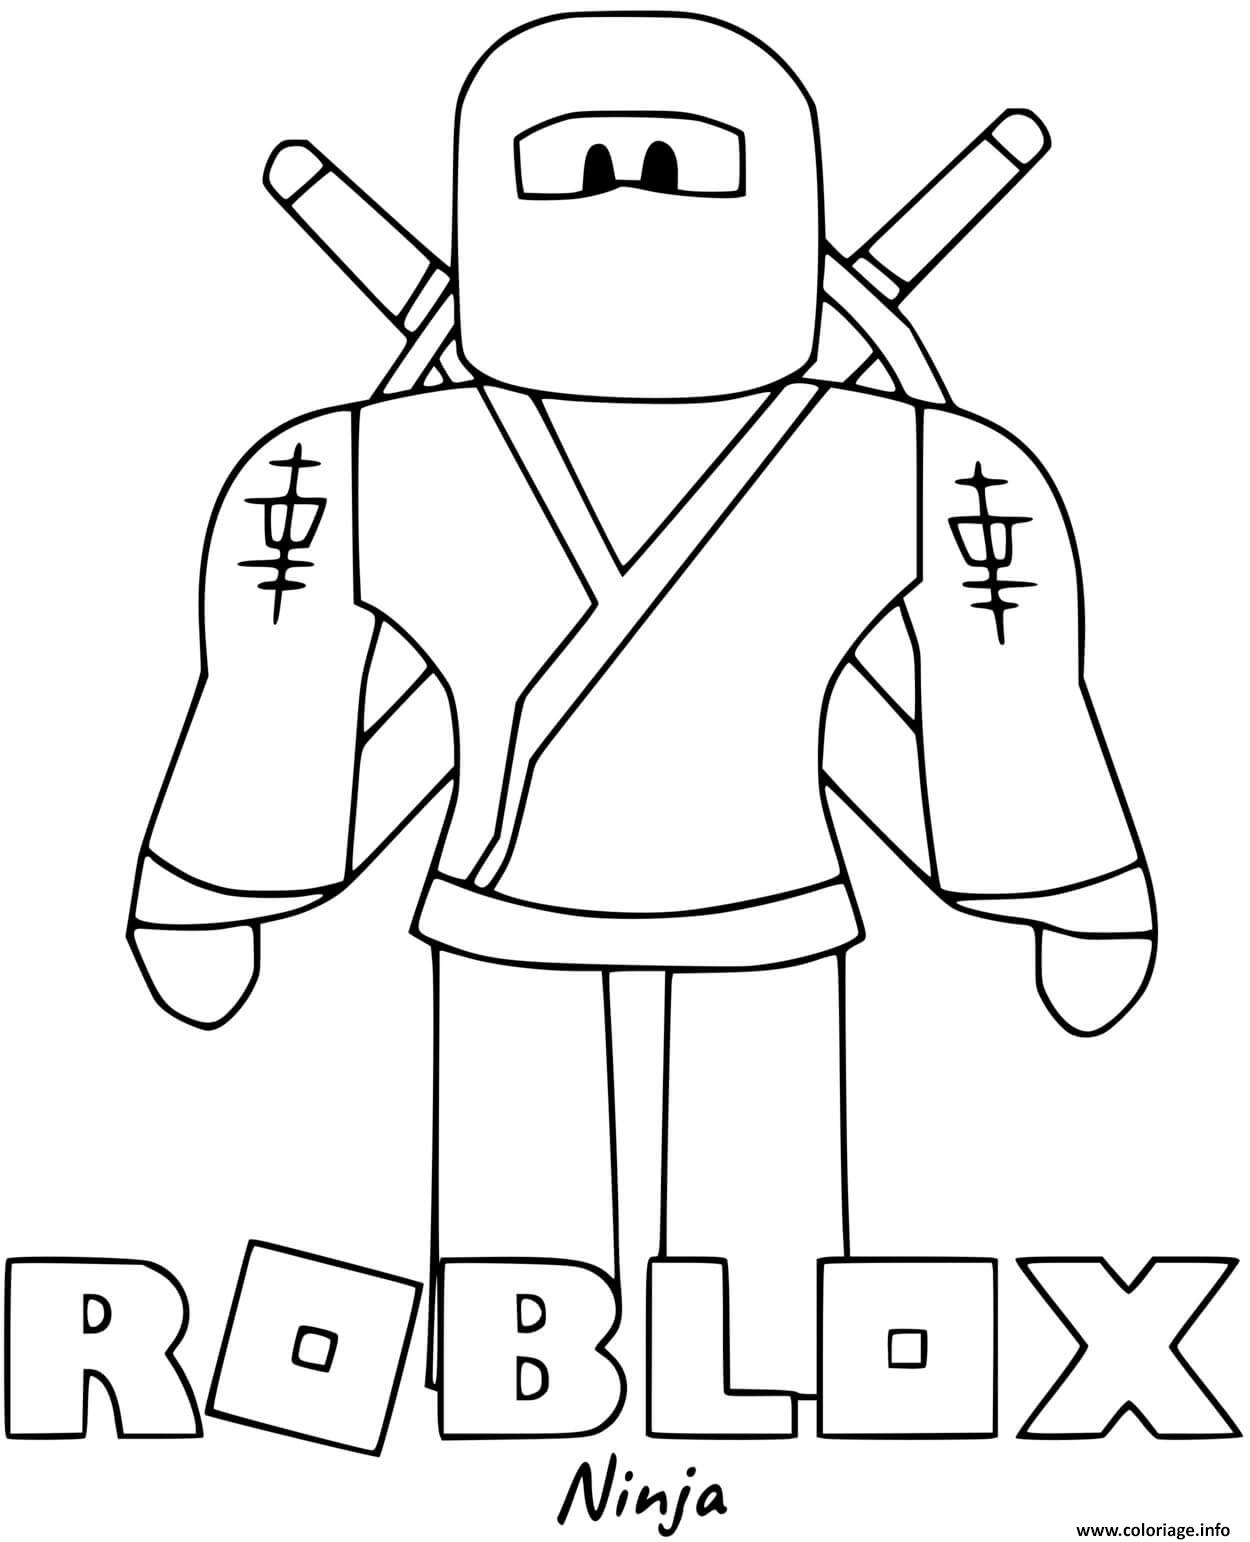 Coloriage Roblox Ninja Dessin Roblox à Imprimer